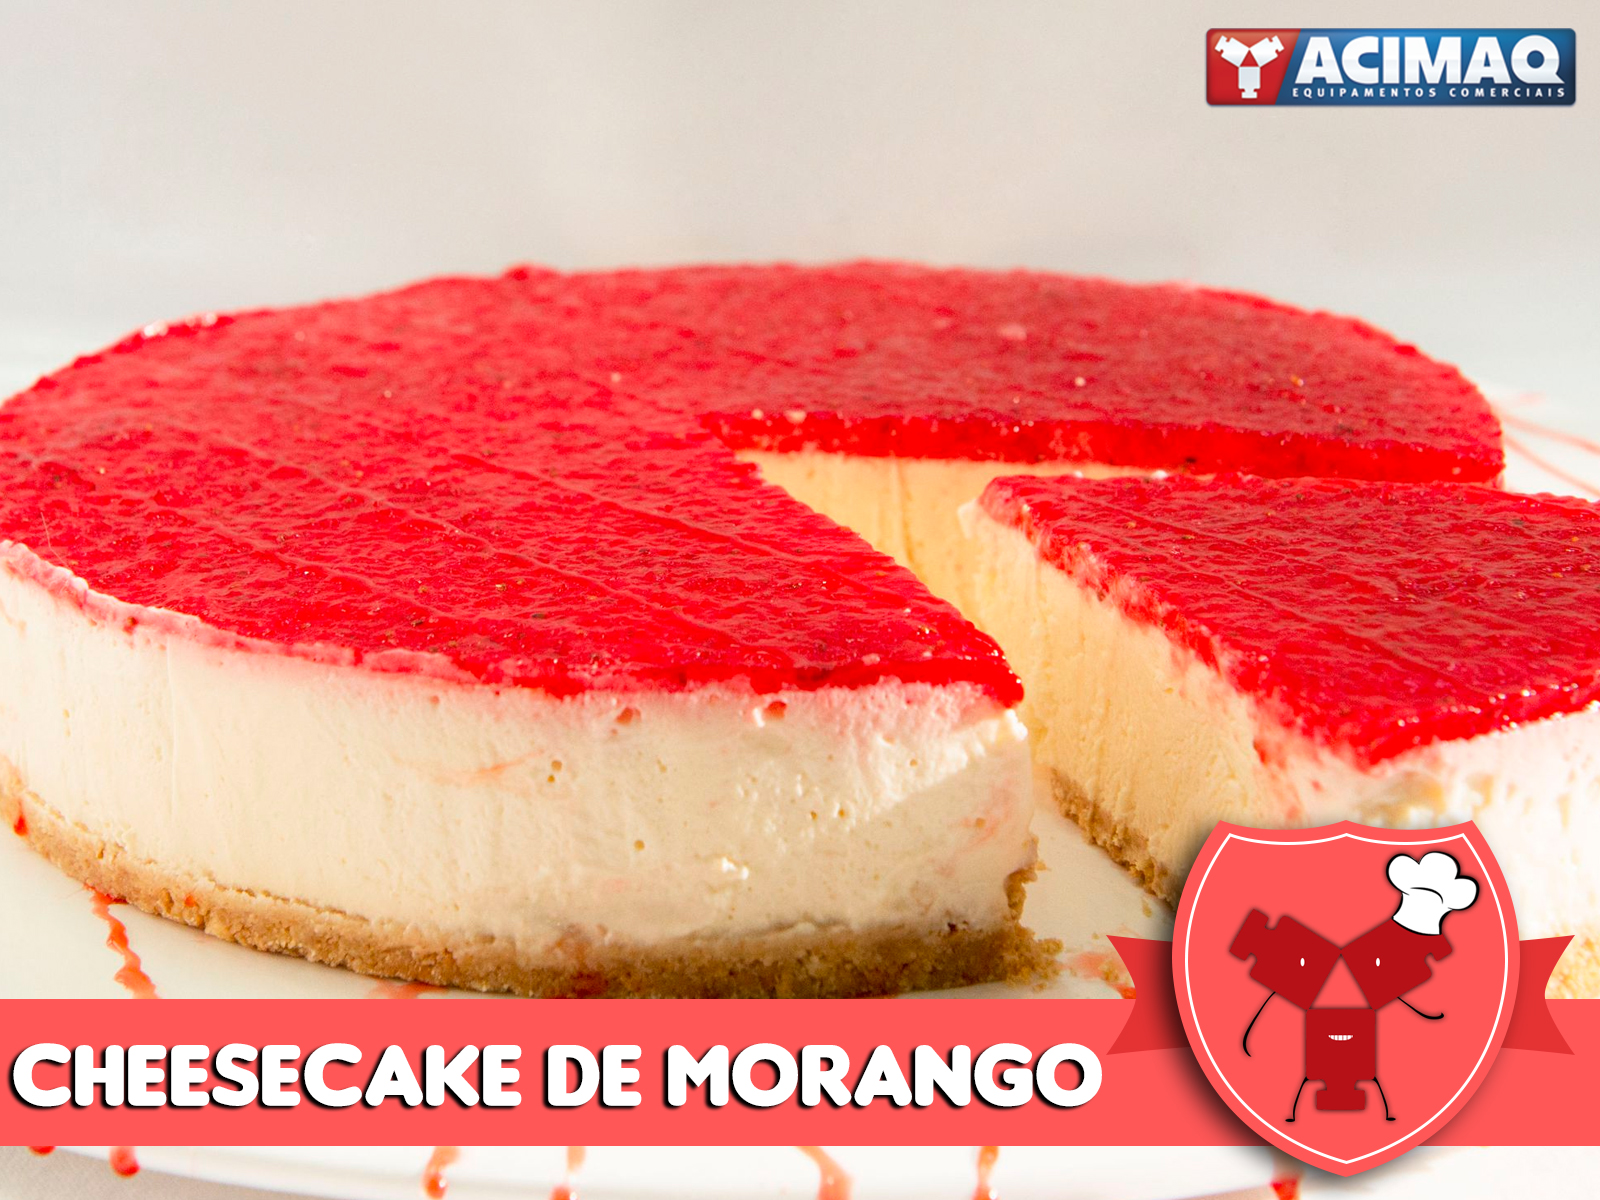 Receitas Acimaq: Cheesecake de Morango.